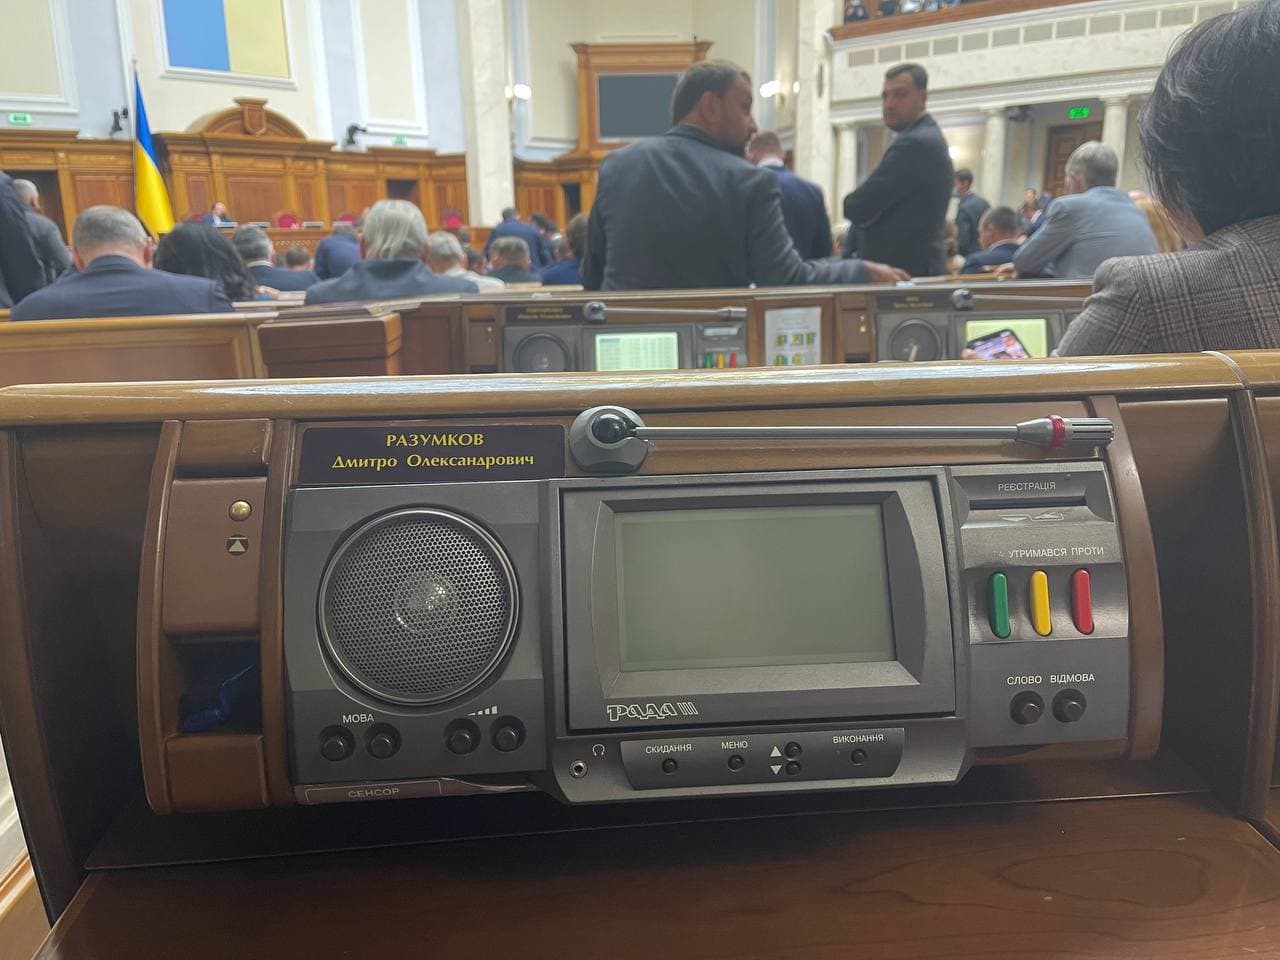 Рада взяла паузу у спікеріаді - що відбувалося в парламенті, фото - О.Гончаренко